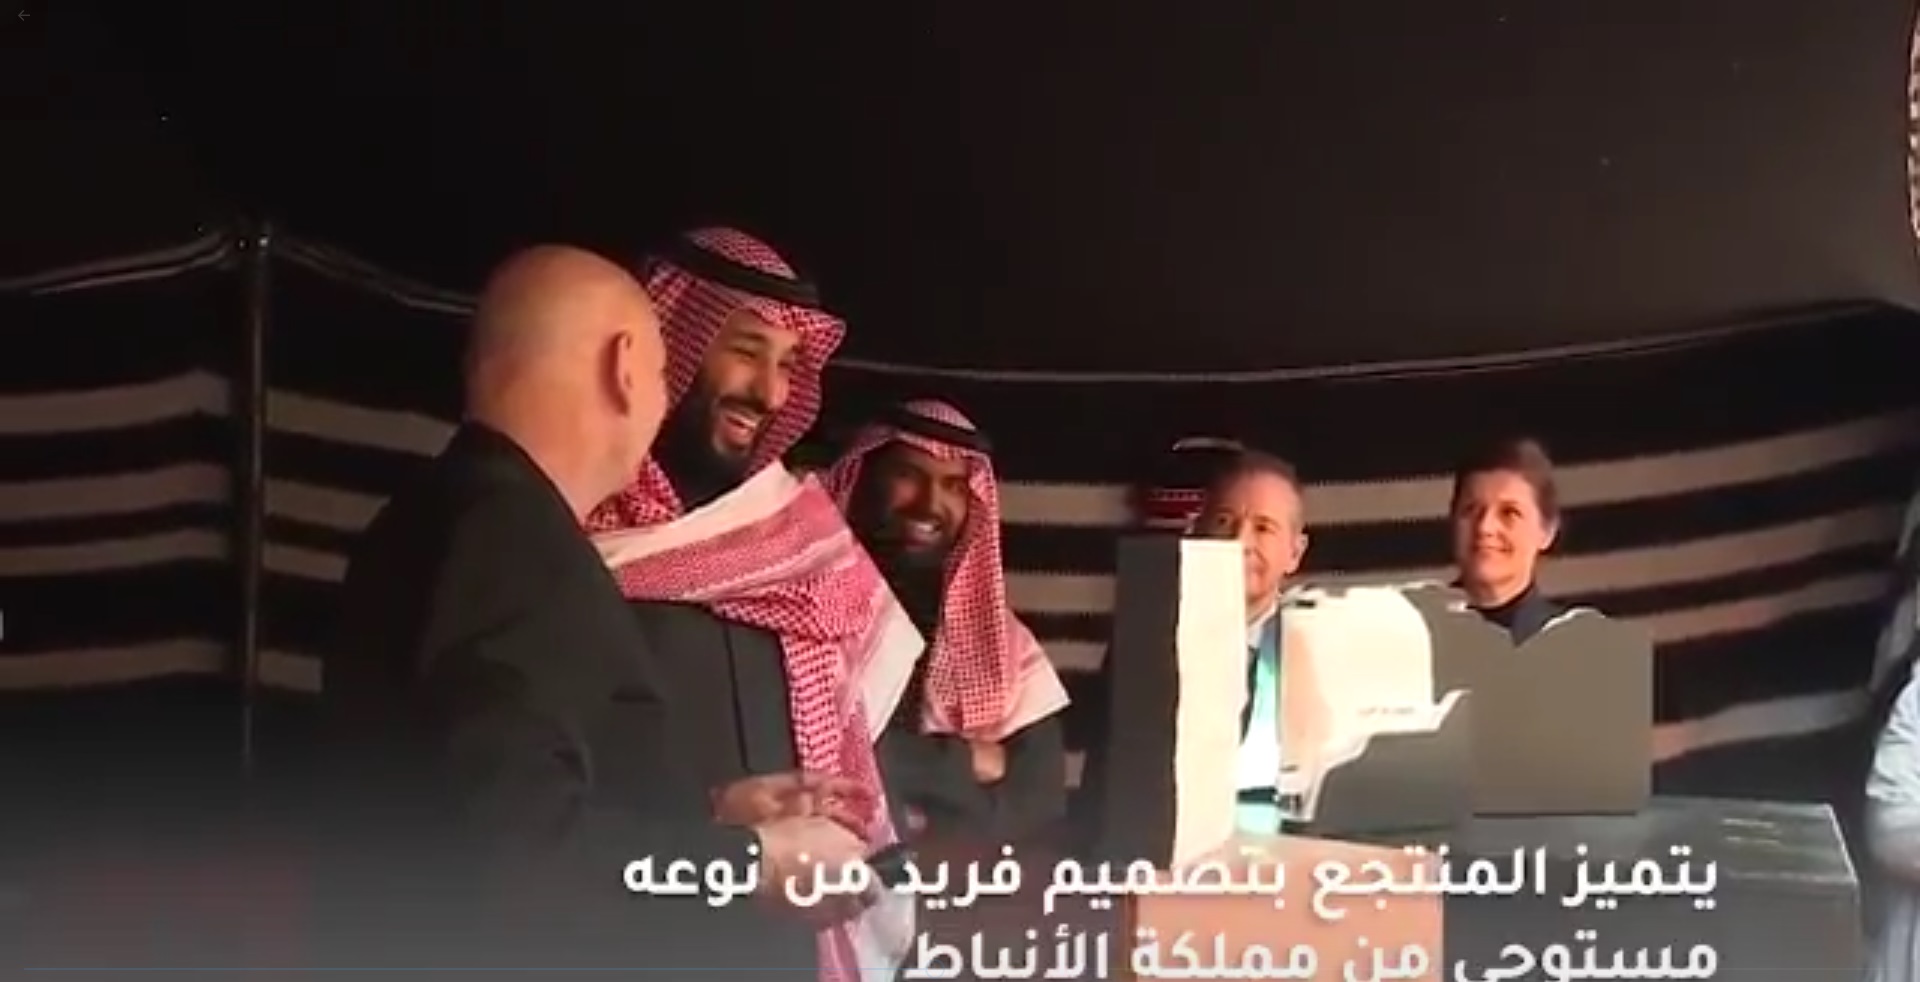 شاهد الفيديو.. الأمير محمد بن سلمان يطلع على عرضٍ لمنتجع شرعان في العلا